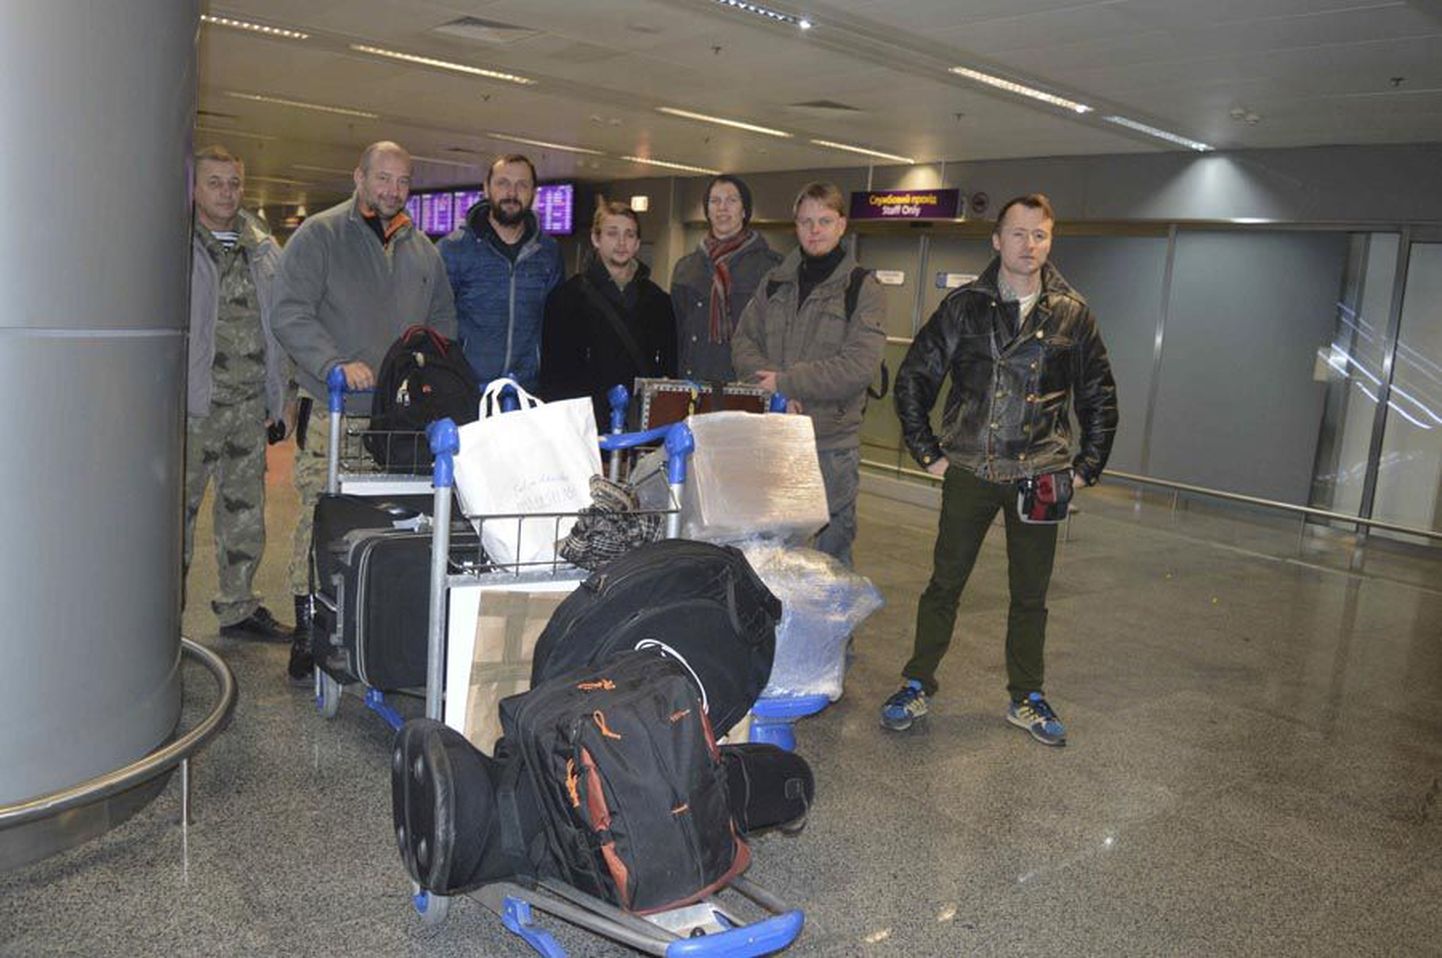 Kiievi lennujaamas andsid ansambli liikmed Ukraina eest võitlevatele vabatahtlikele meditsiiniabipakid, mis olid Eestist sinna läkitatud.